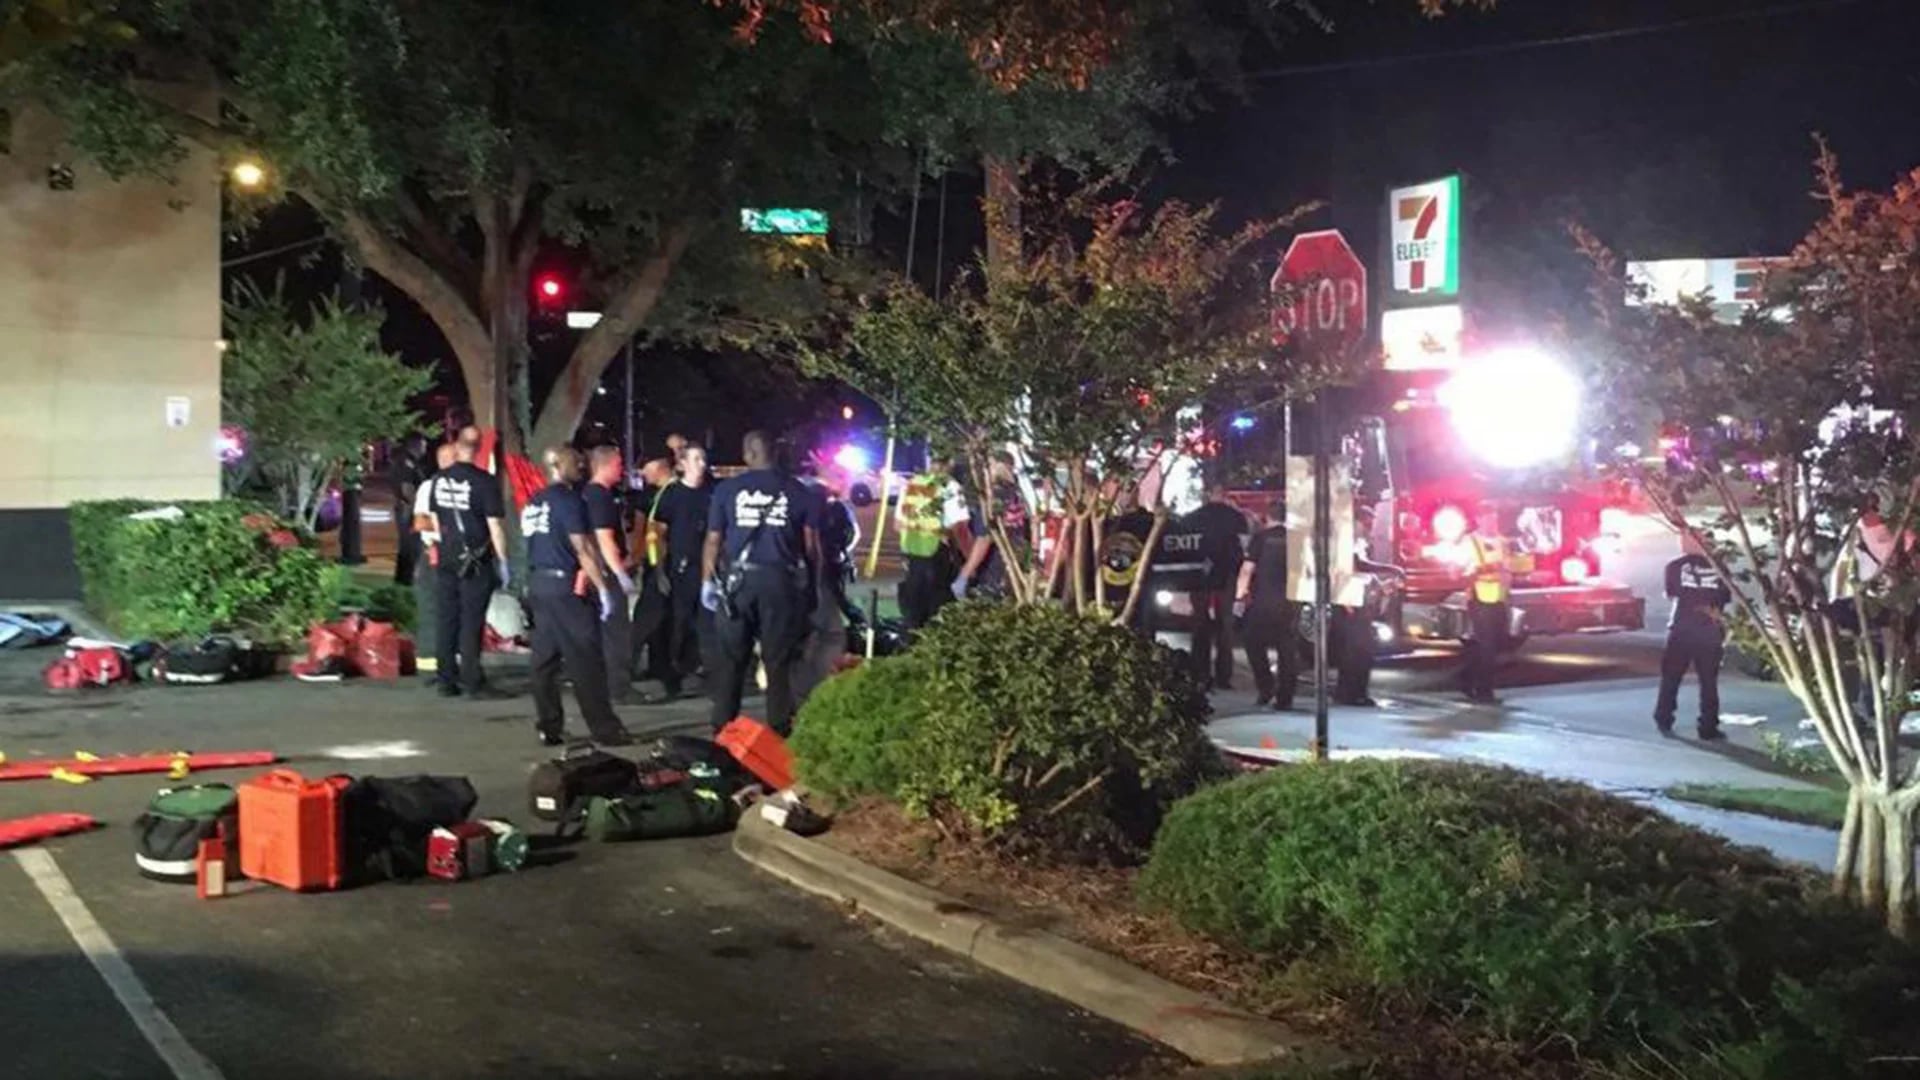 La Policía realizó una “explosión controlada” frente a la discoteca de Orlando (@la_informacion)